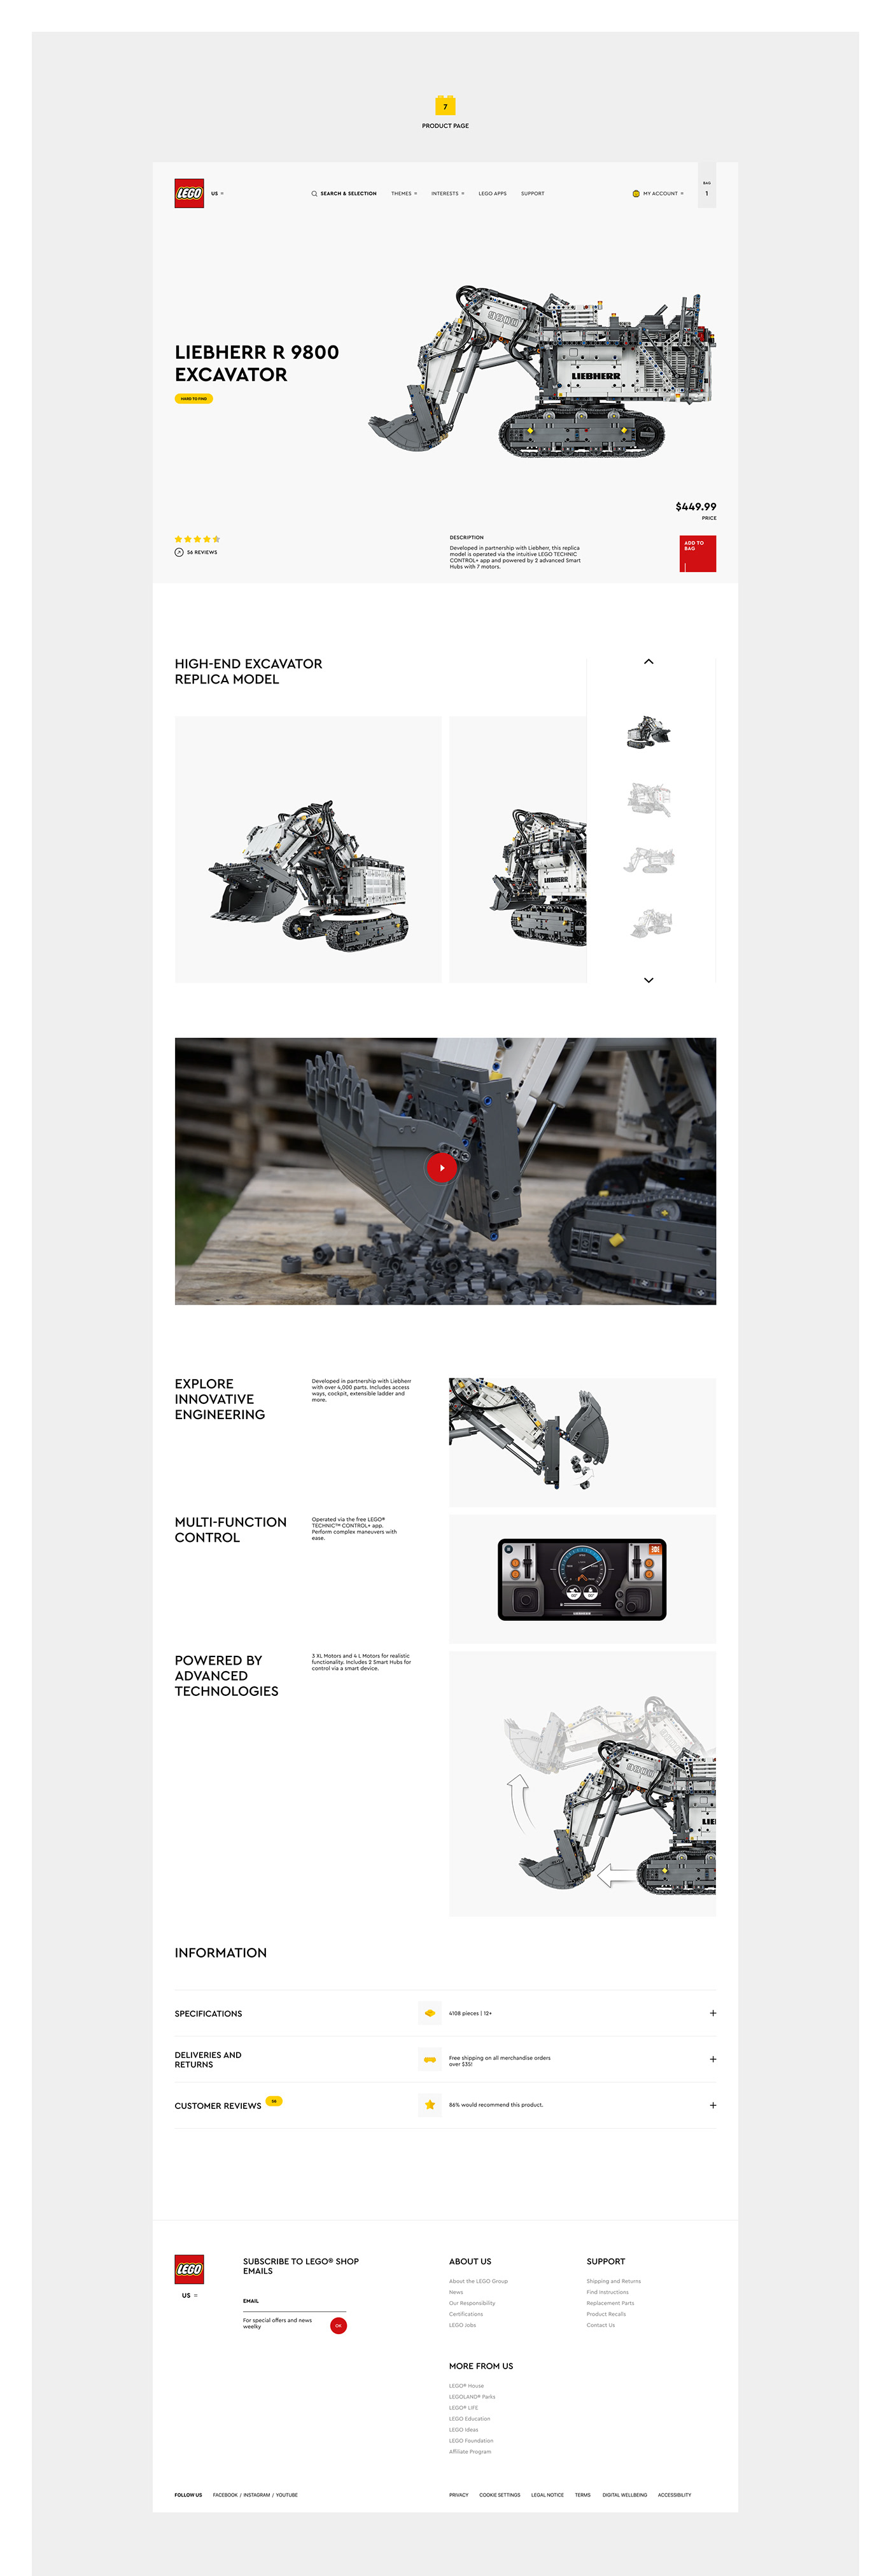 LEGO乐高网页概念设计欣赏